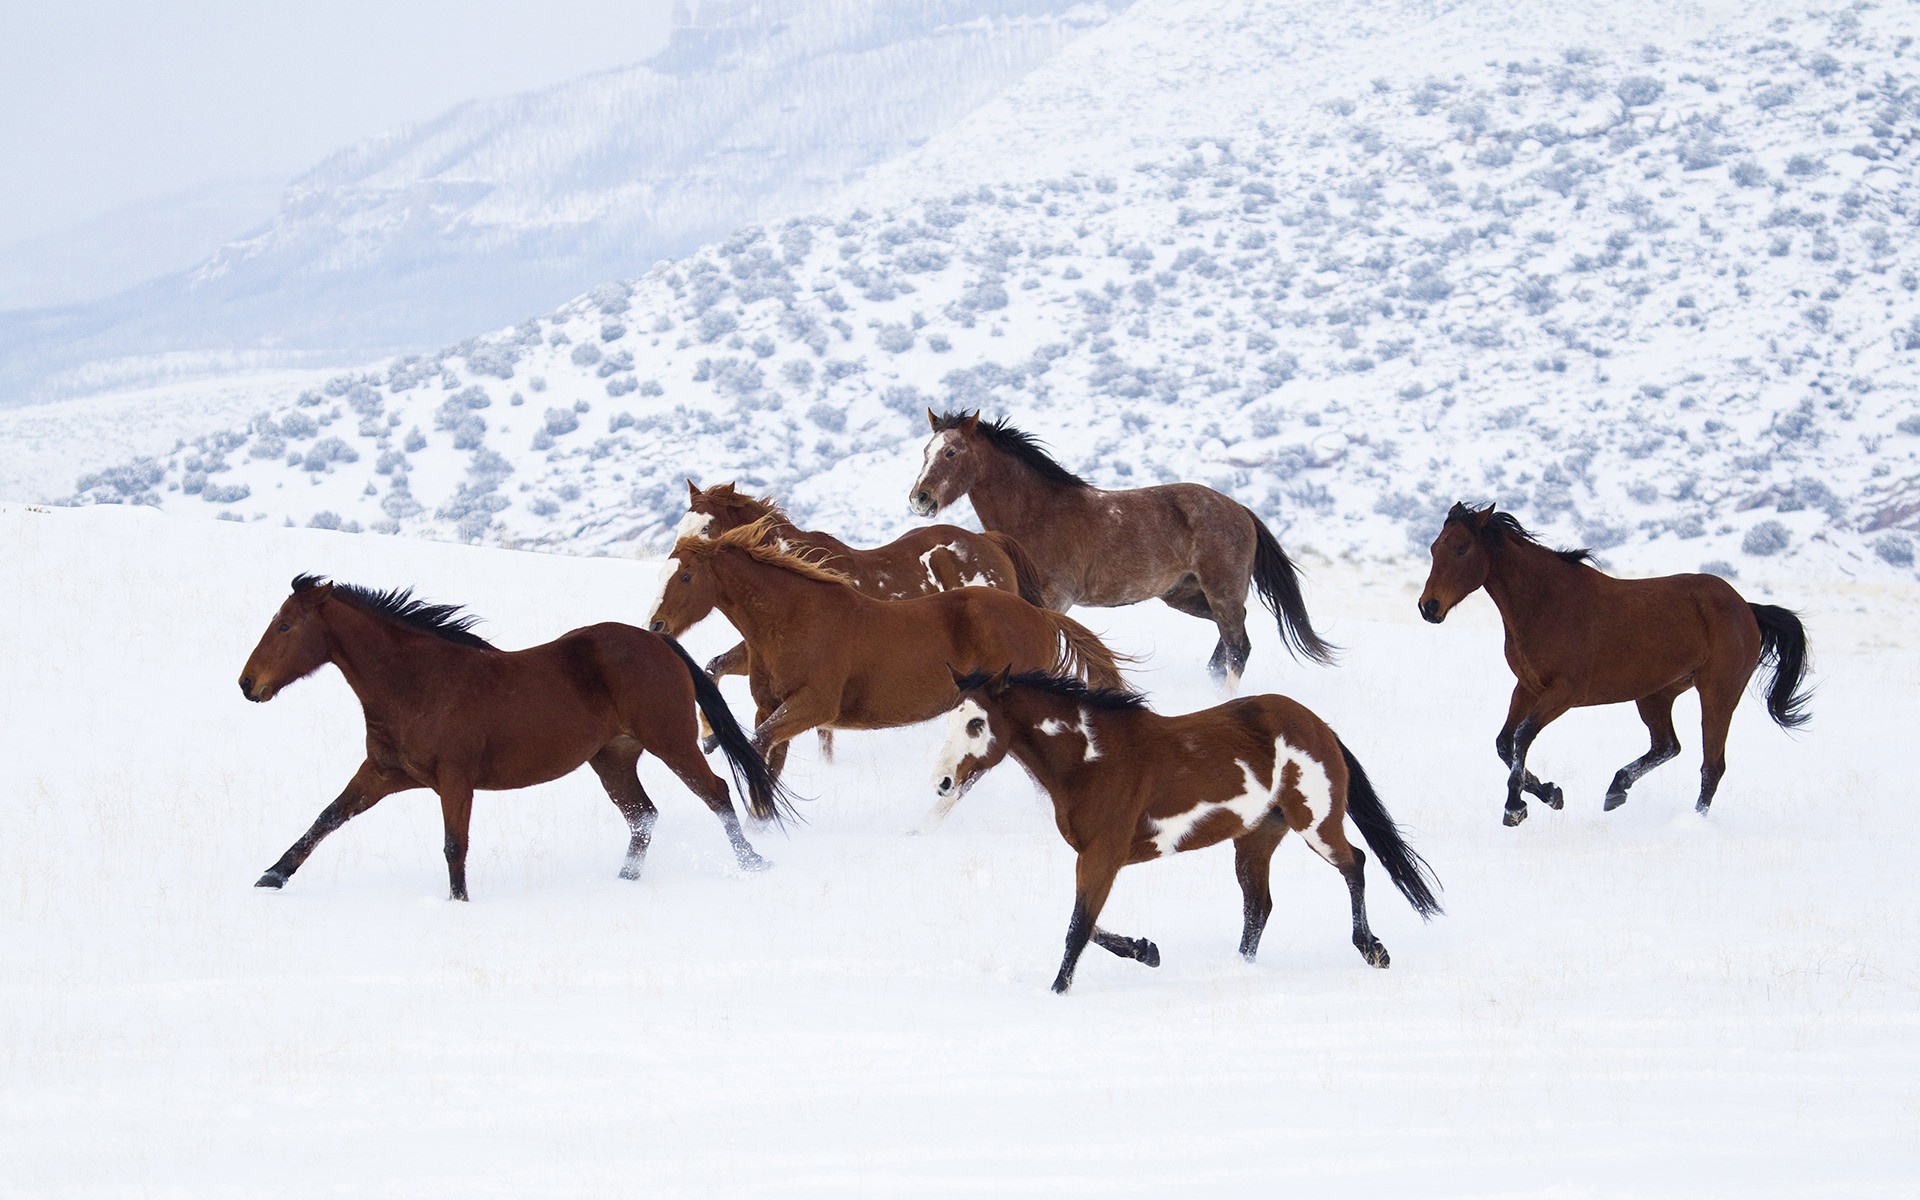 General 1920x1200 horse snow animals winter plains white wildlife running mammals